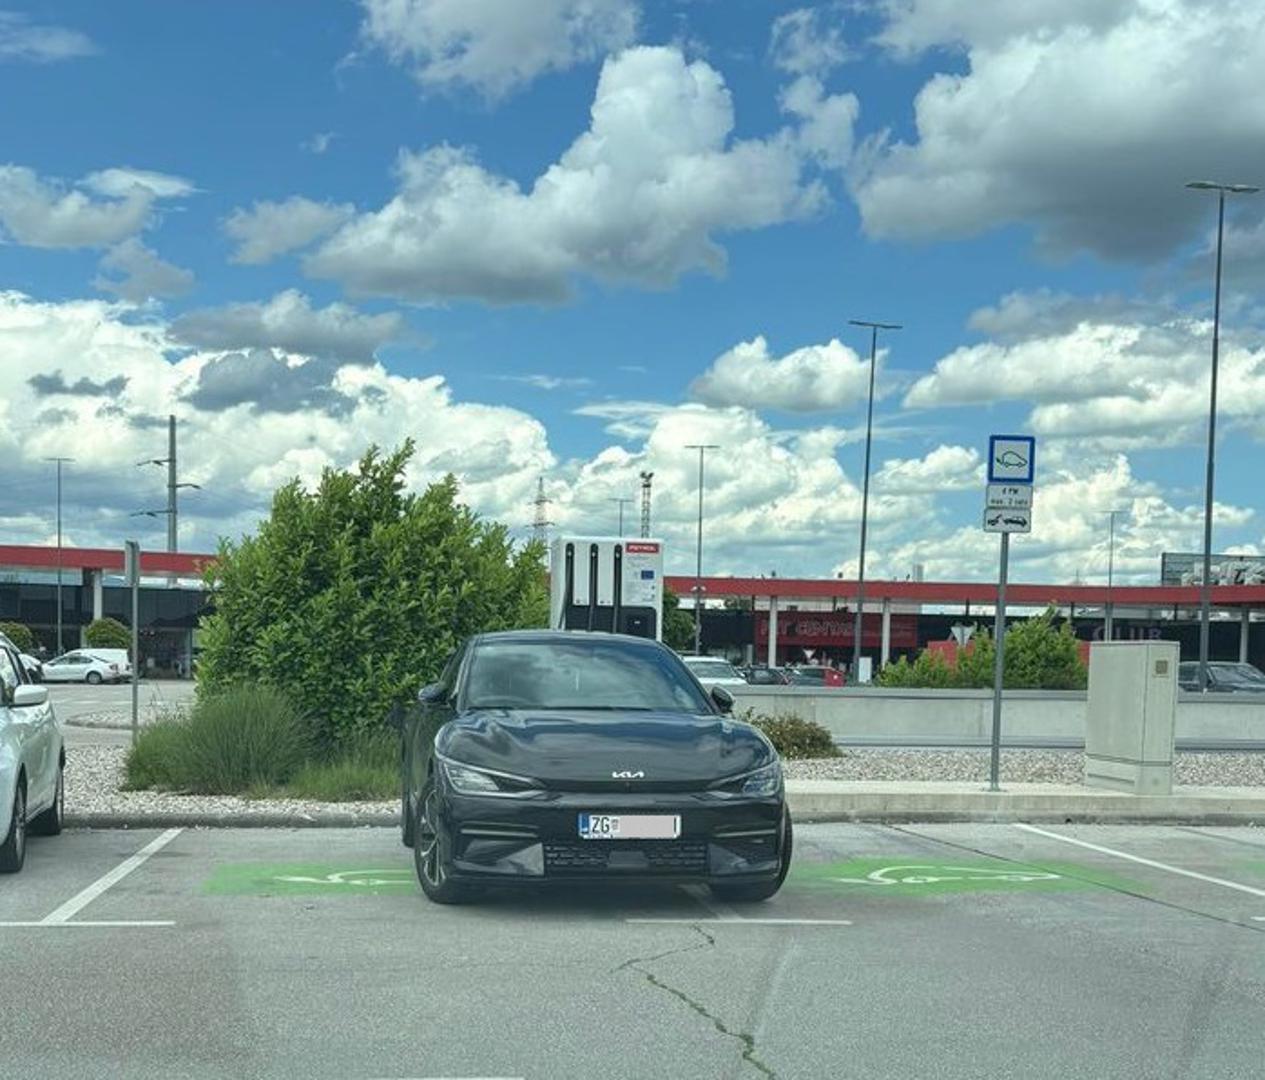 Nepropisno parkirane automobile u Hrvatskoj možemo vidjeti svaki dan.